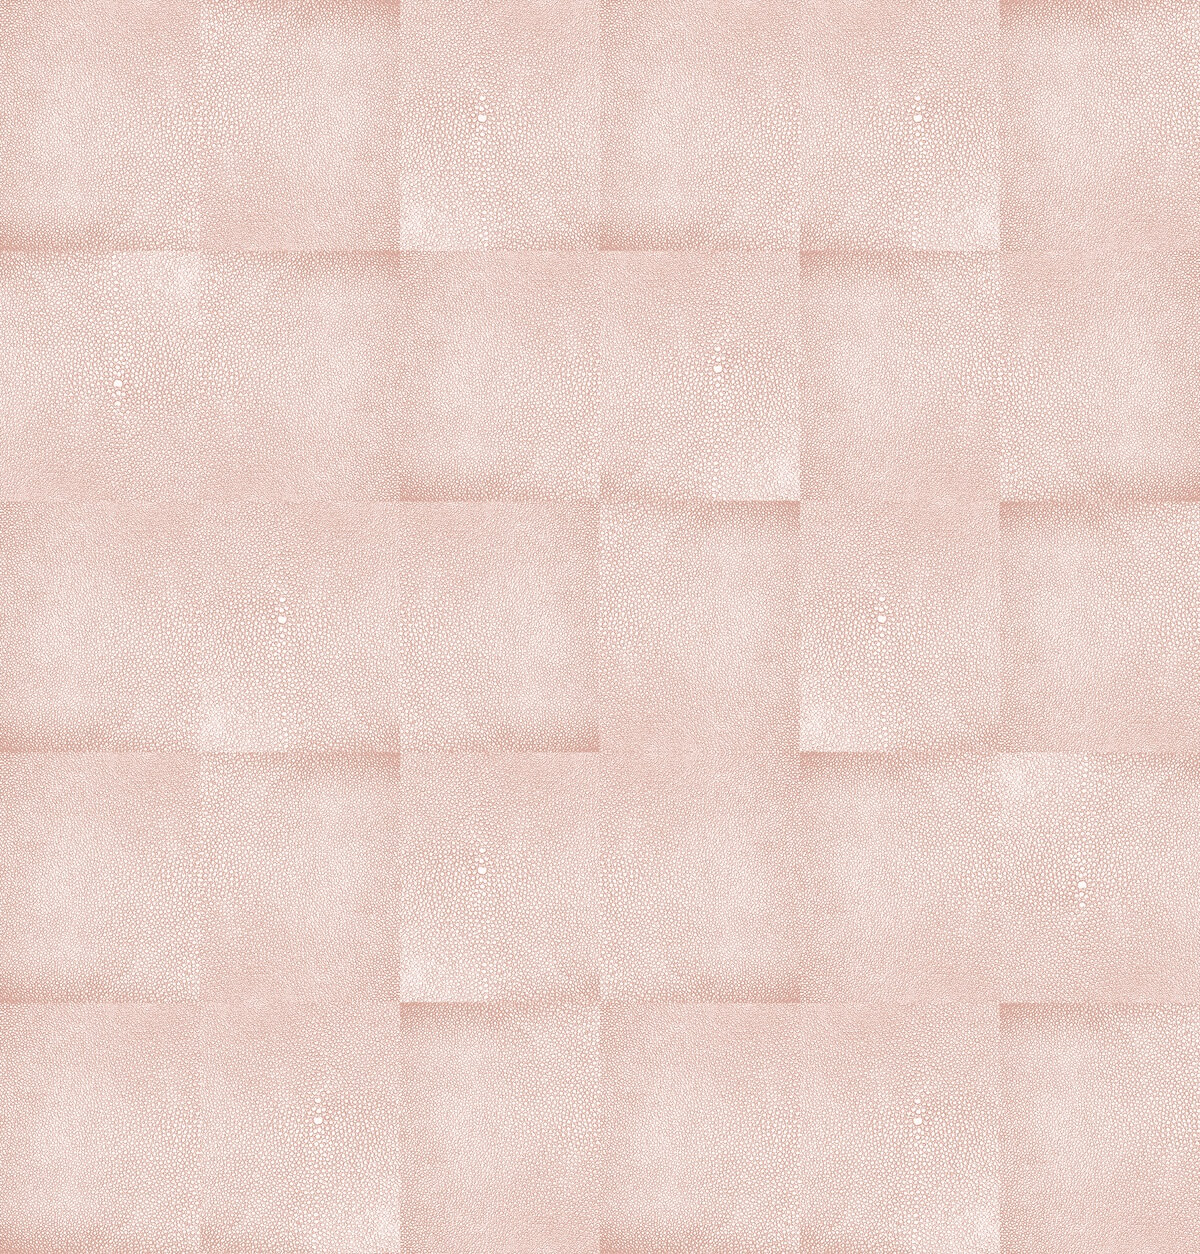 Shagreen pattern in blush